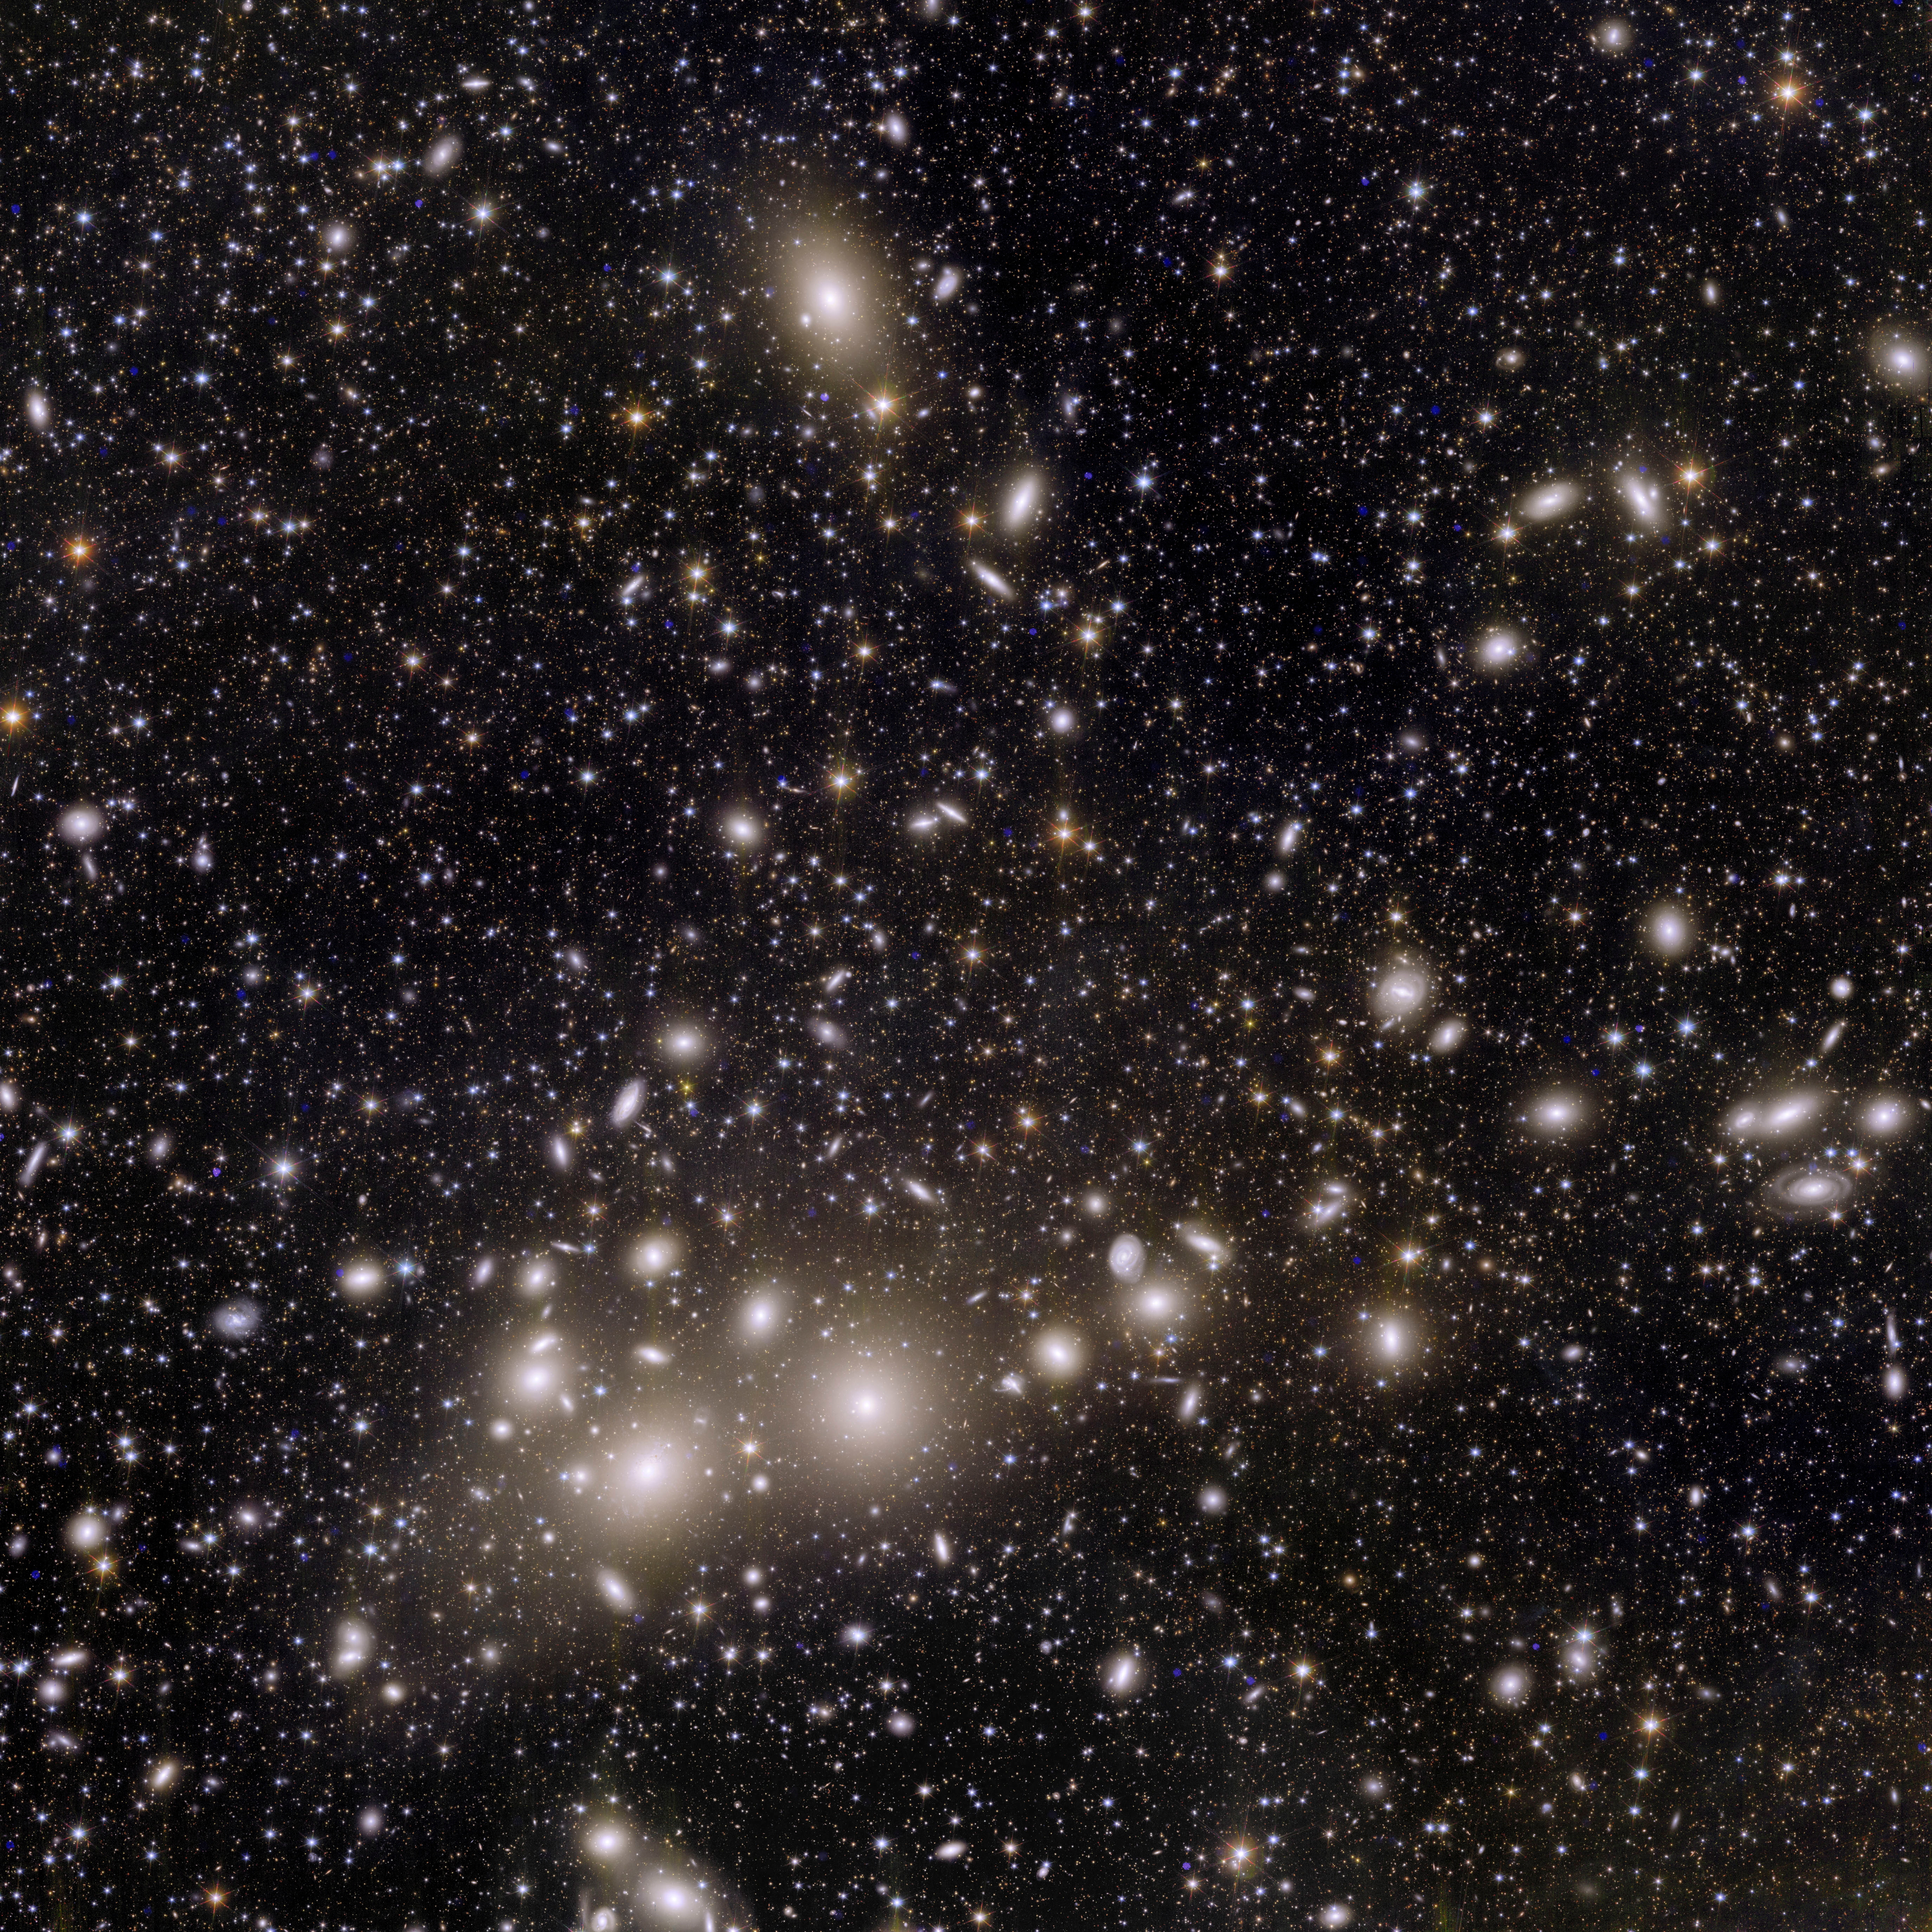 欧州宇宙望遠鏡の画像初公開、2.4億光年先のペルセウス座銀河団など